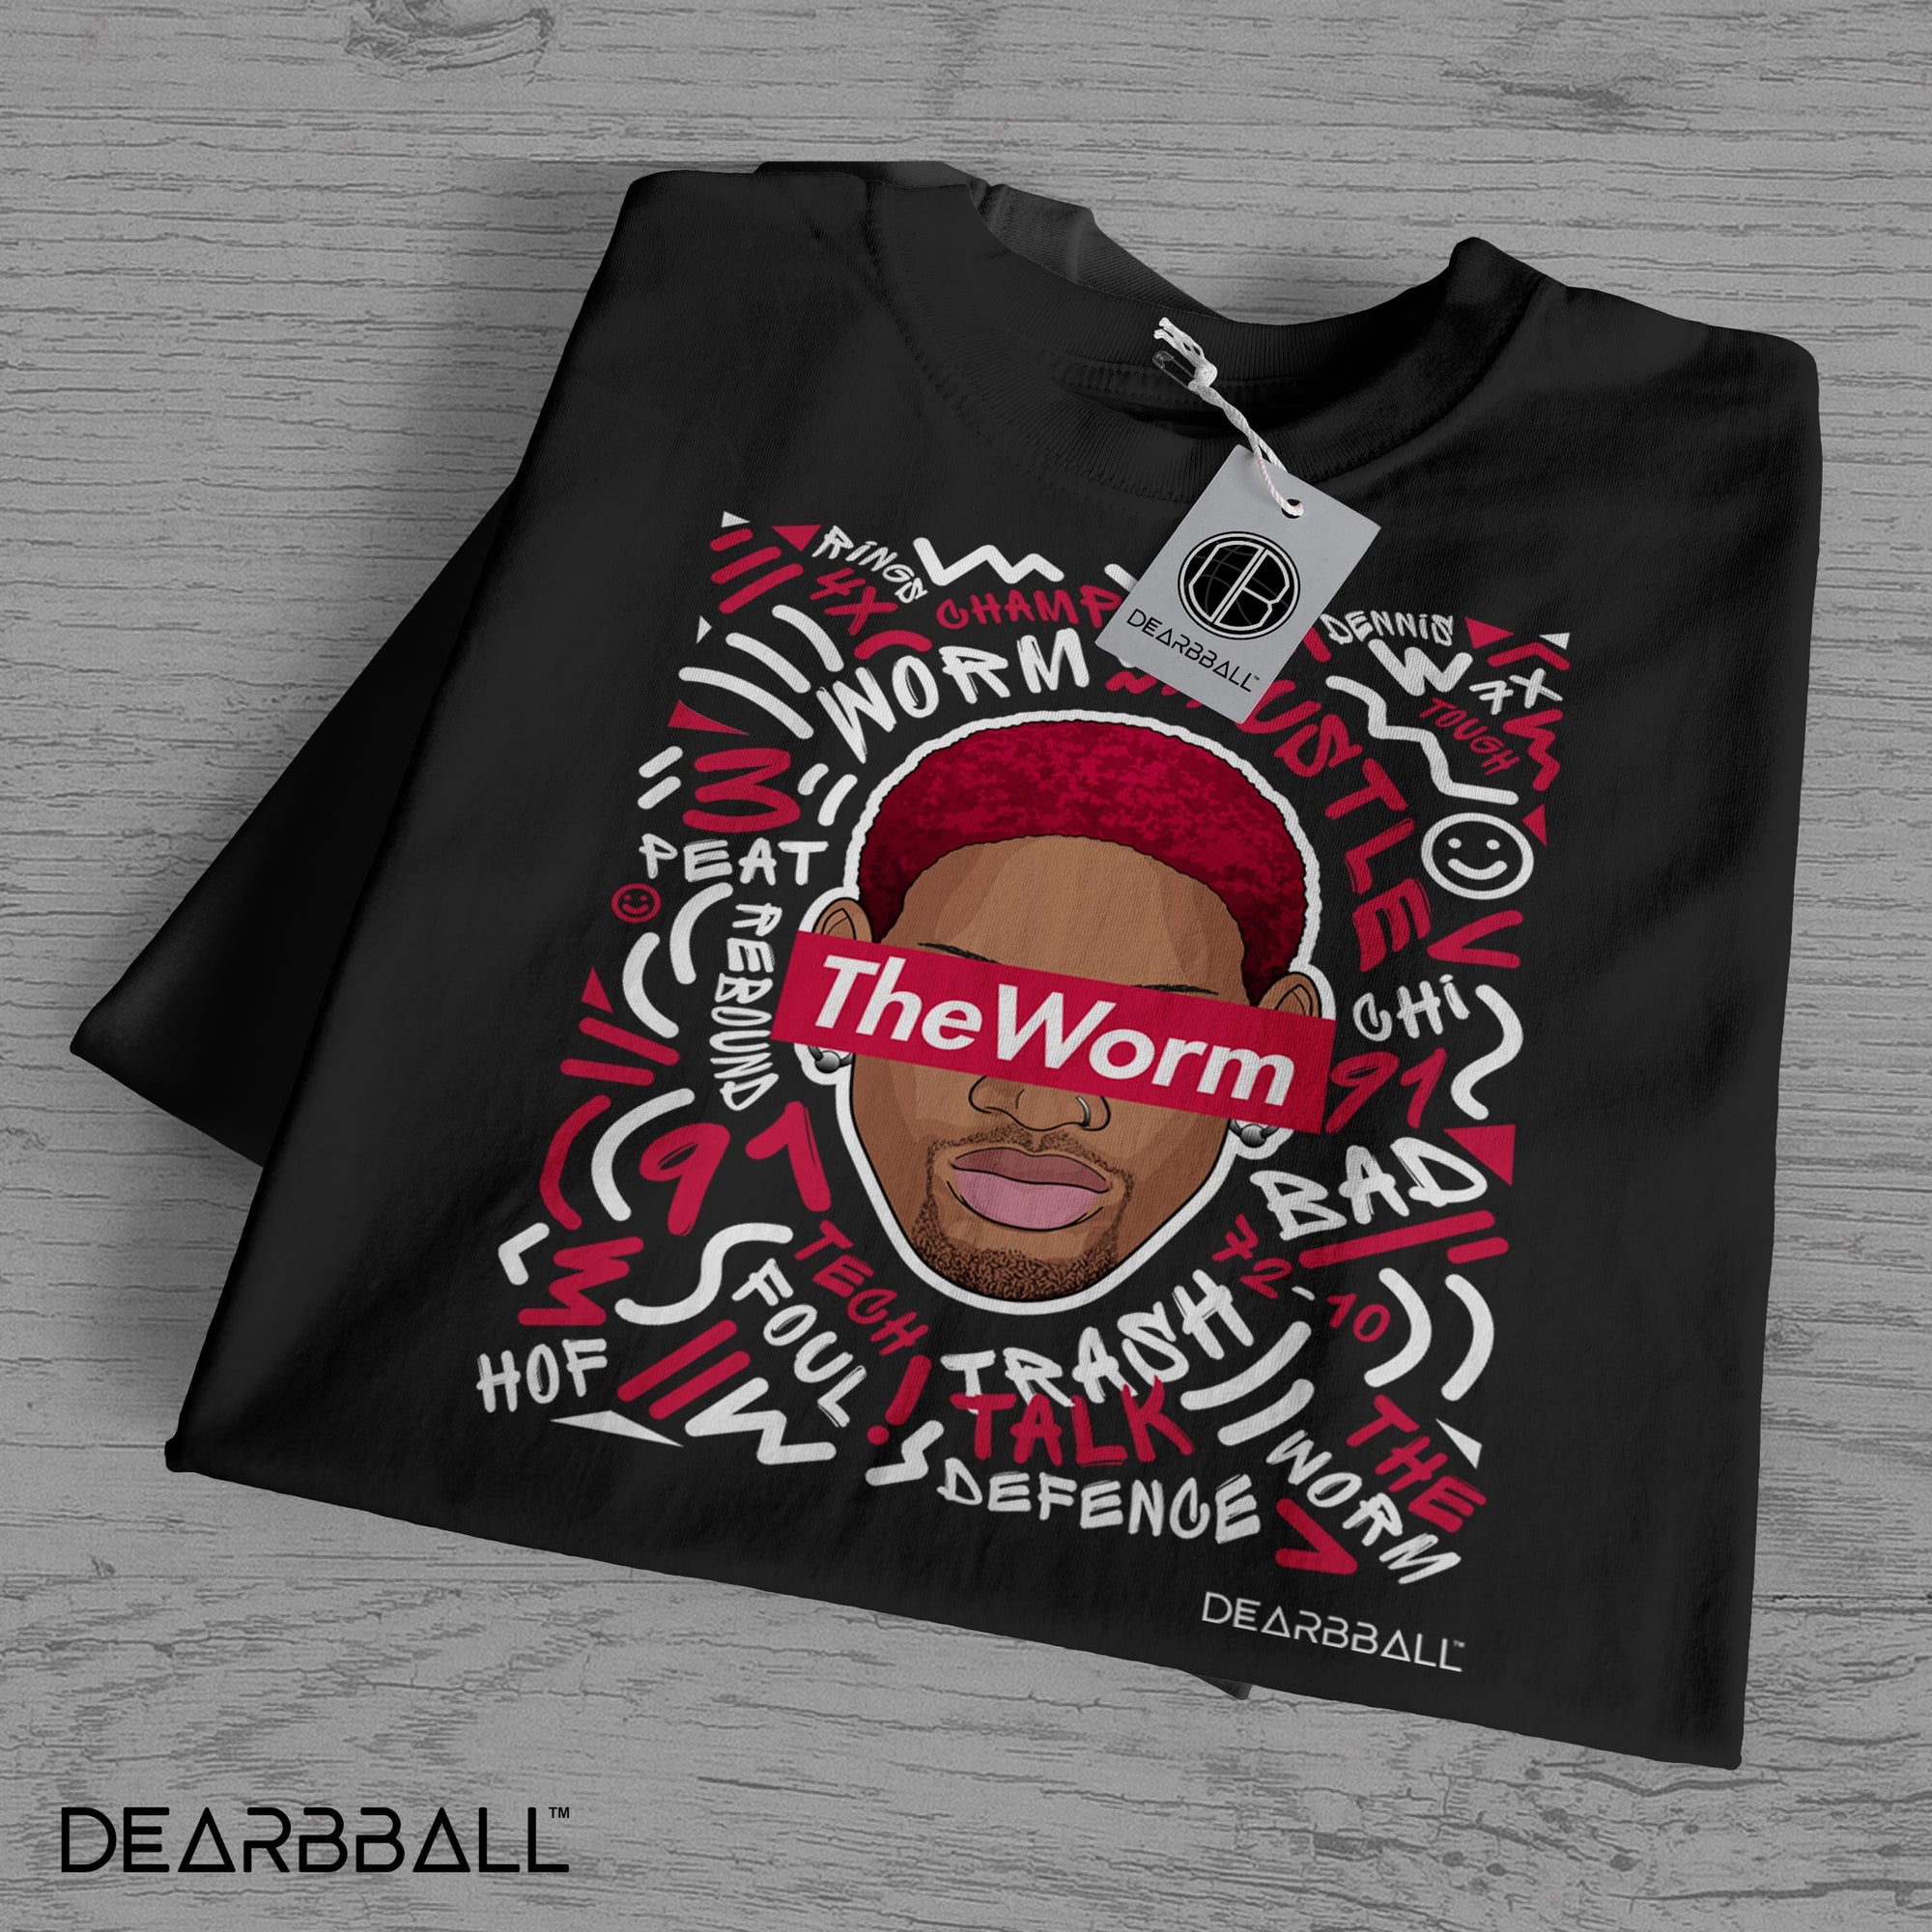 DearBBall T-Shirt - The Worm Words Matter Edition